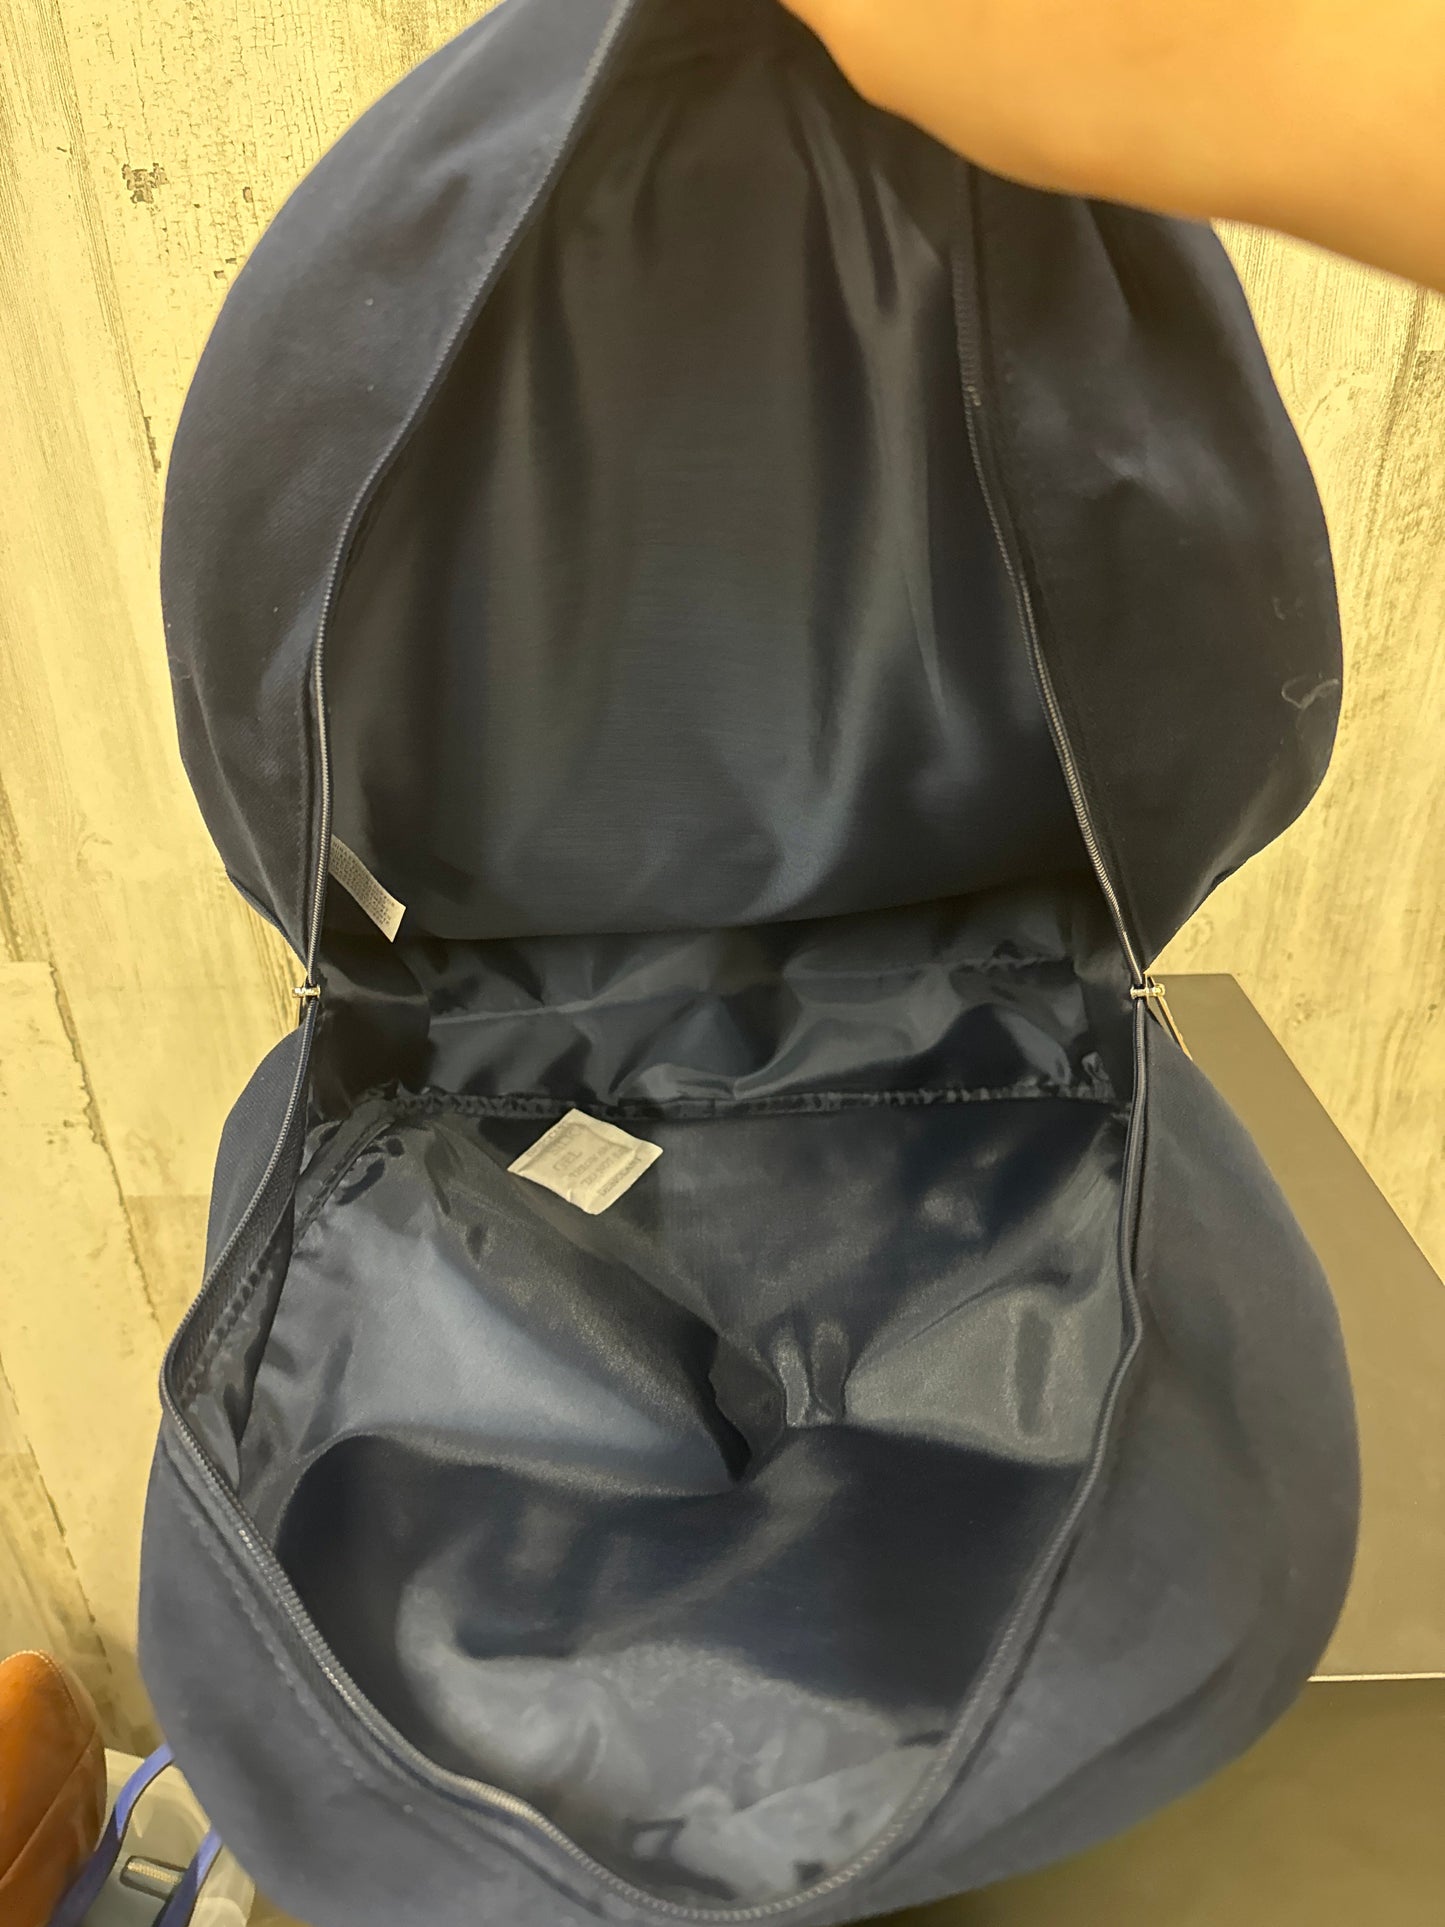 Navy Backpack Ralph Lauren, Size Medium